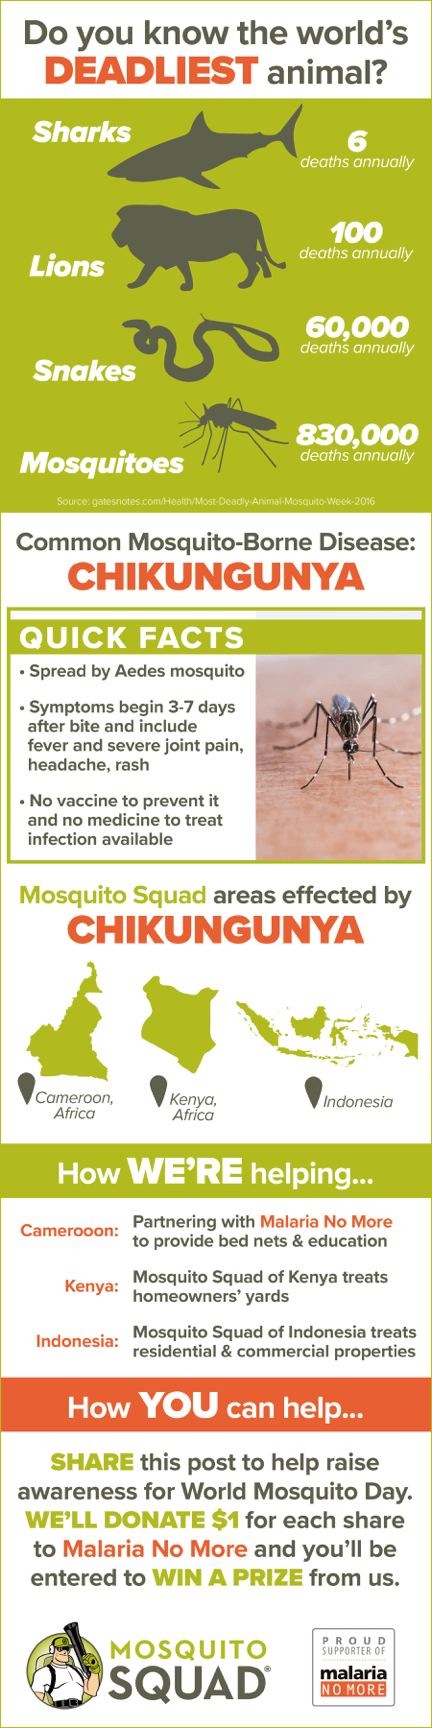 Chikungunya Virus Facts to Know Before World Mosquito Day